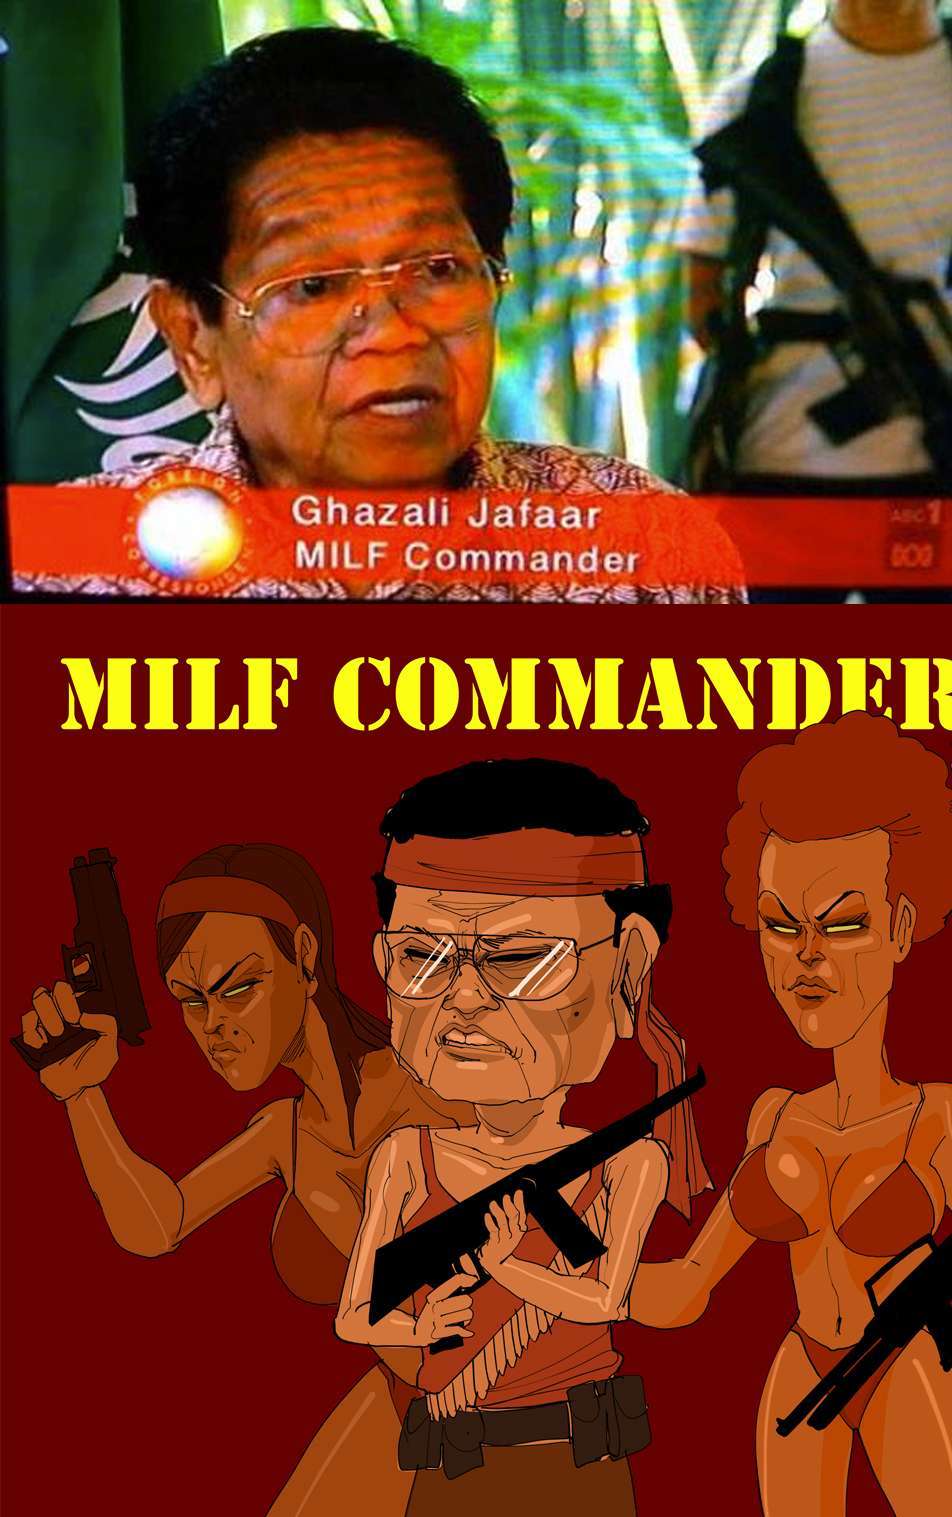 MILF commander - meme